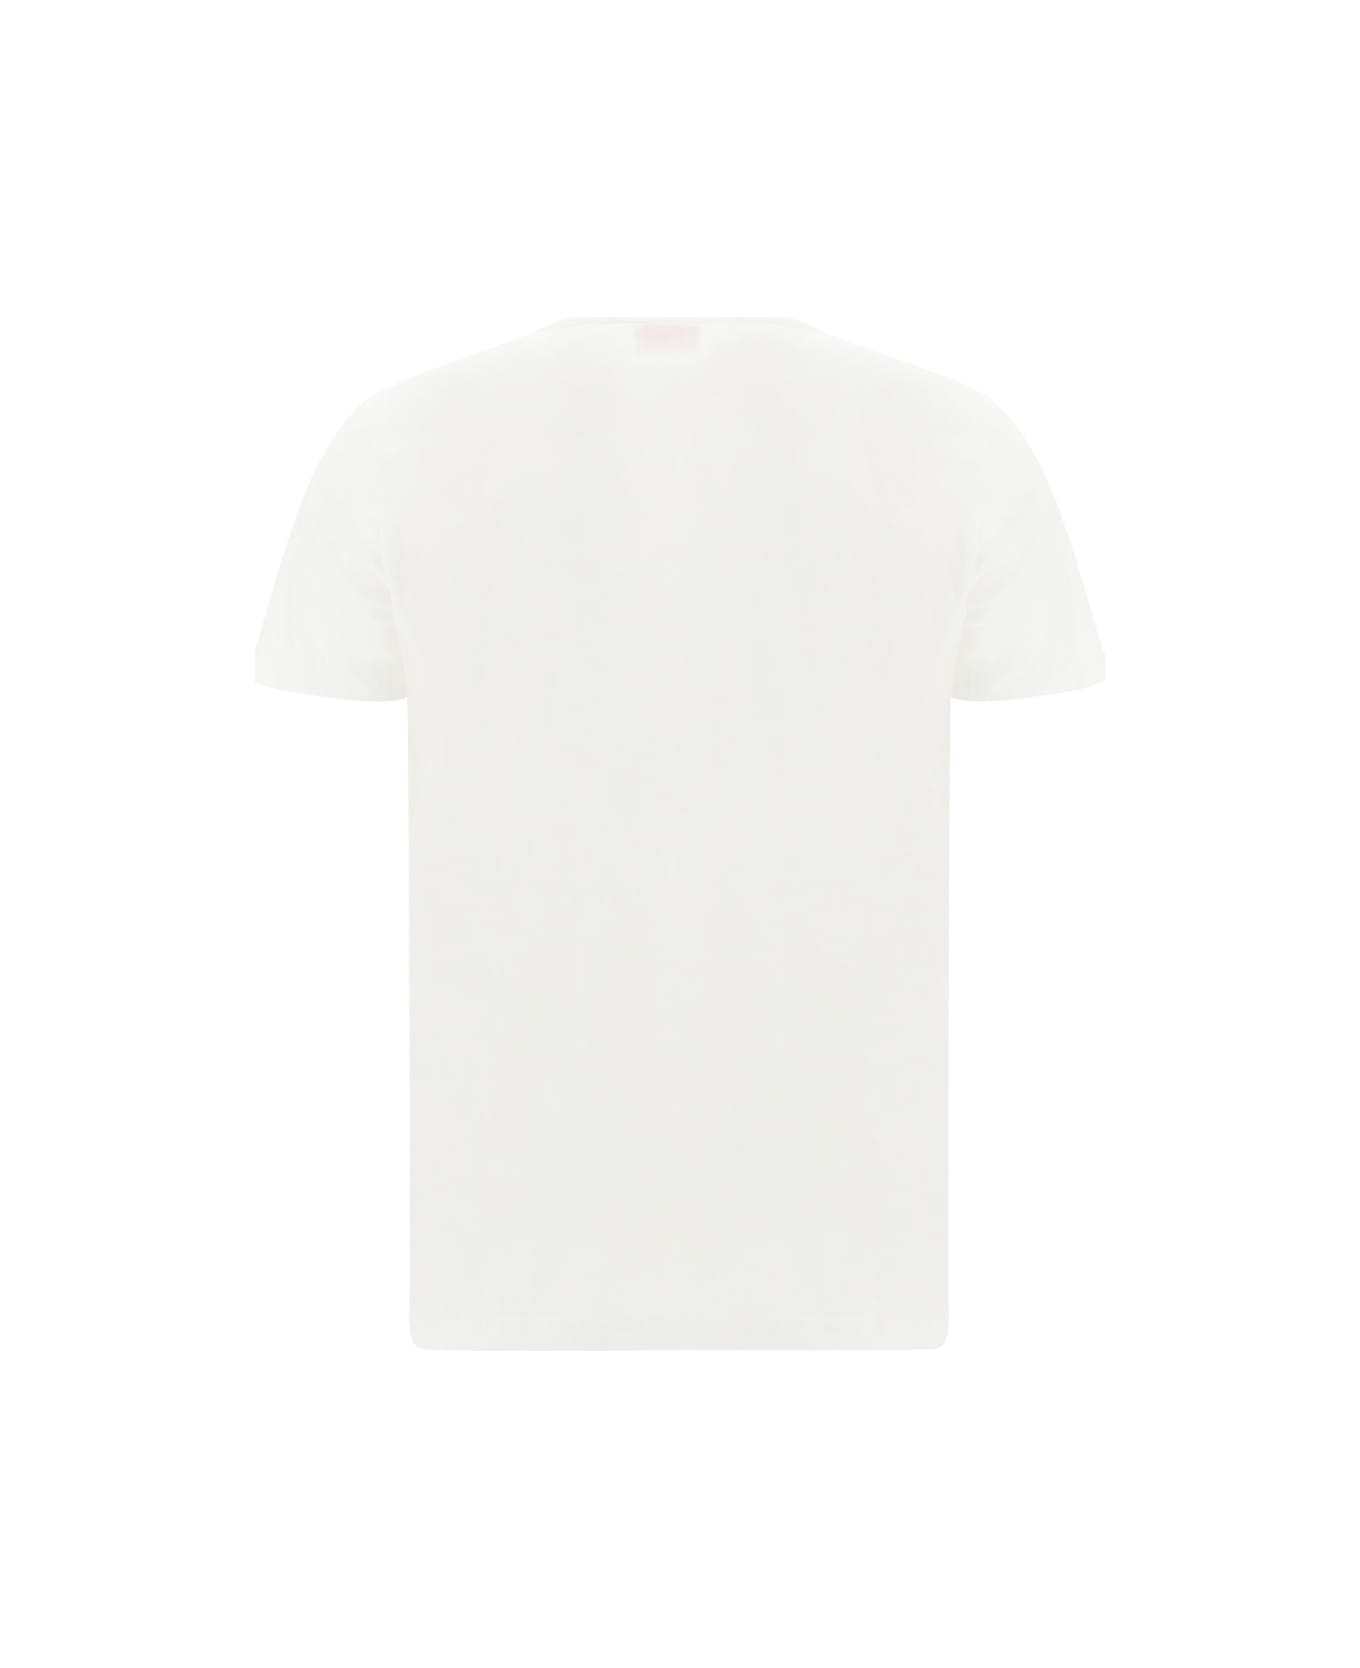 Diesel T-diegor T-shirt - White